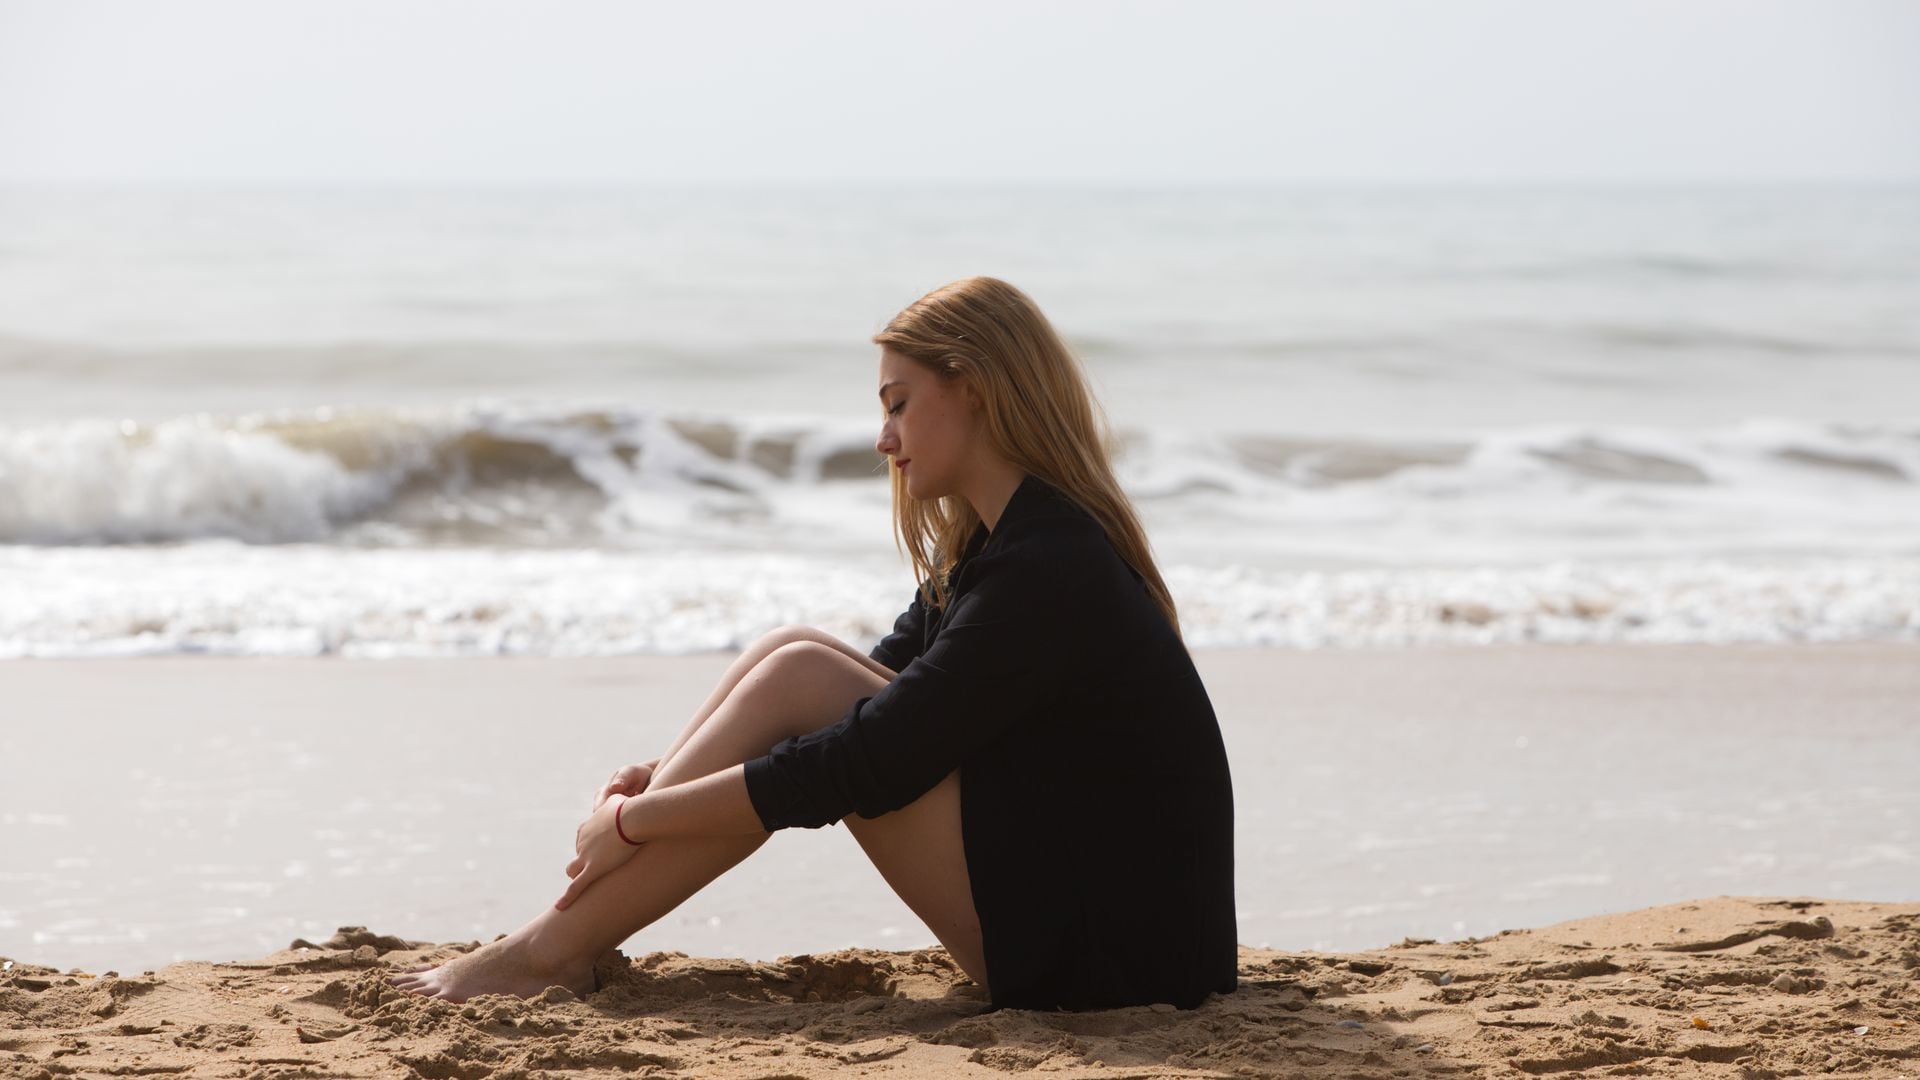 Mujer joven pensativa sentada en la arena de la playa con el mar de fondo